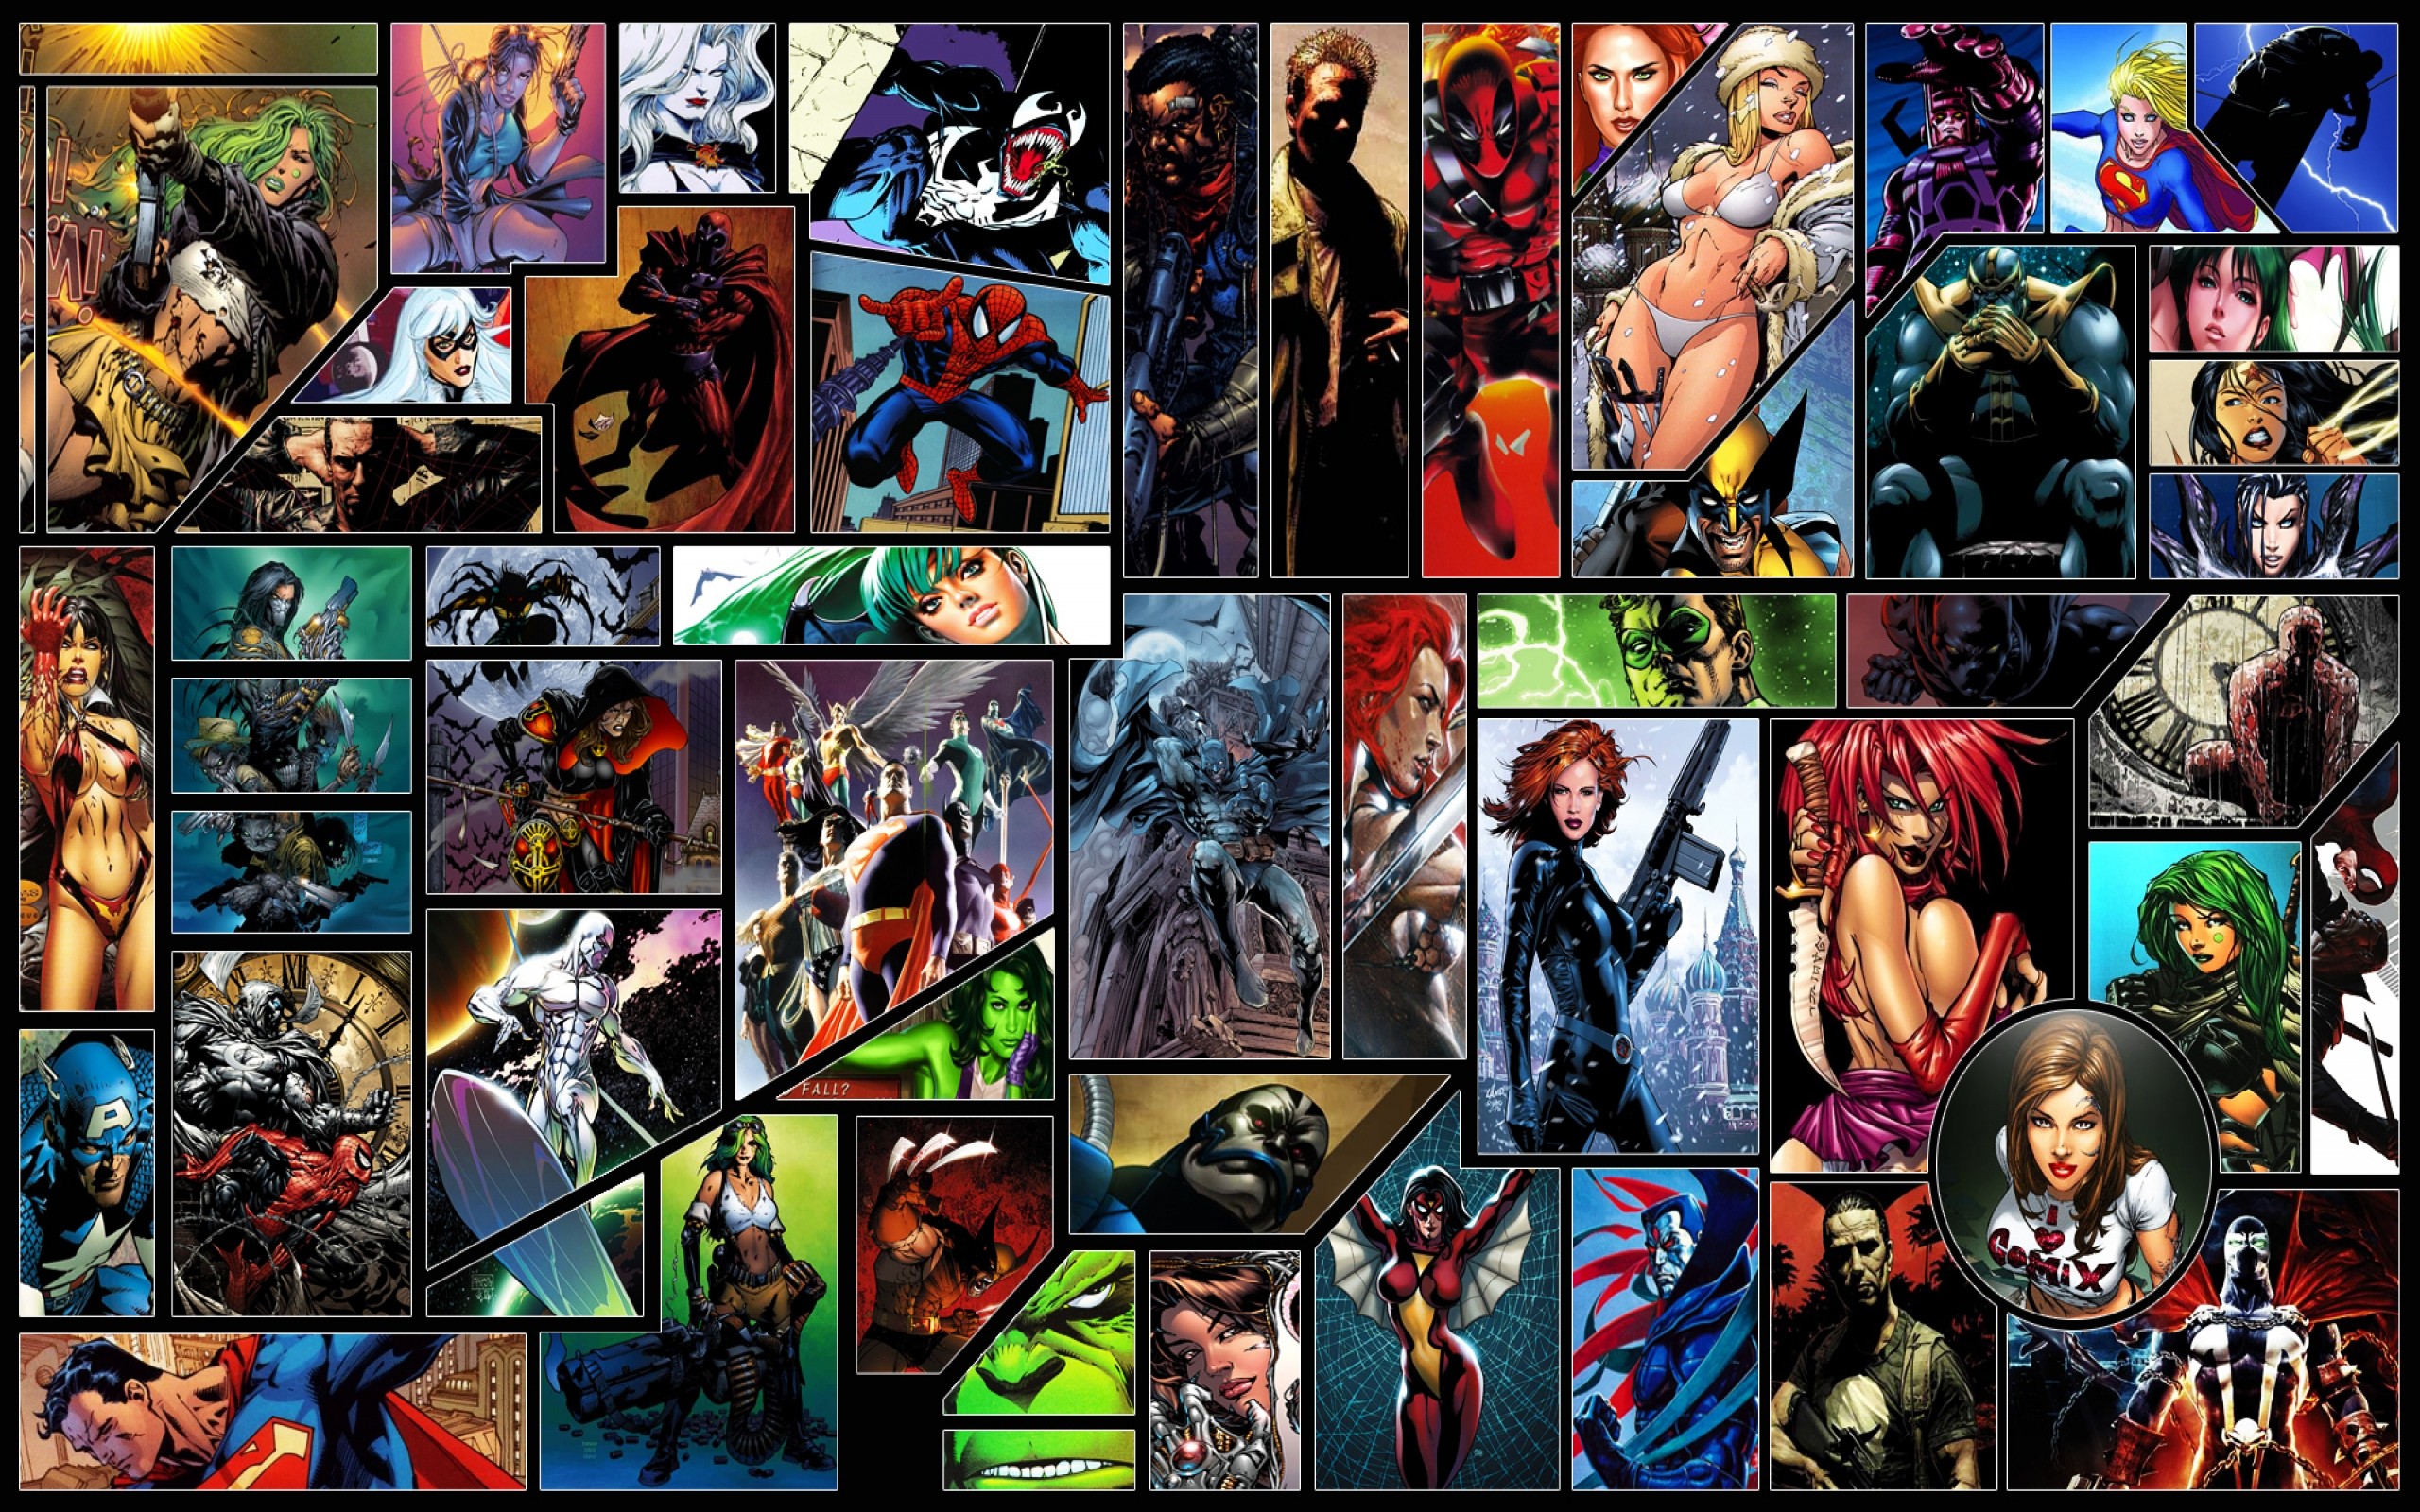 Marvel DC Superheroes Wallpaper - WallpaperSafari